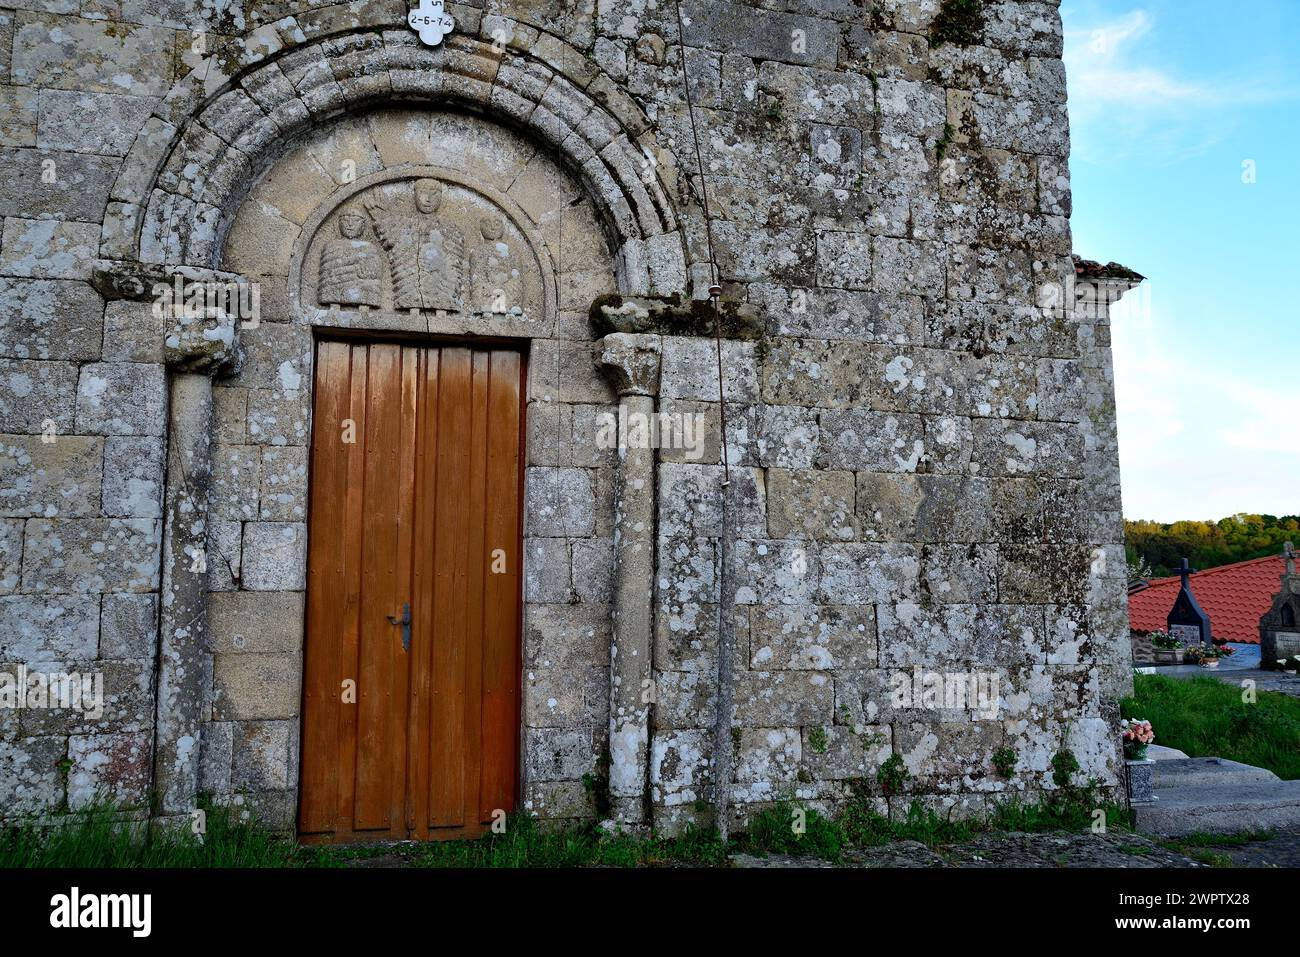 Church of San Paio de Muradelle, Chantada, Lugo, Spain Stock Photo